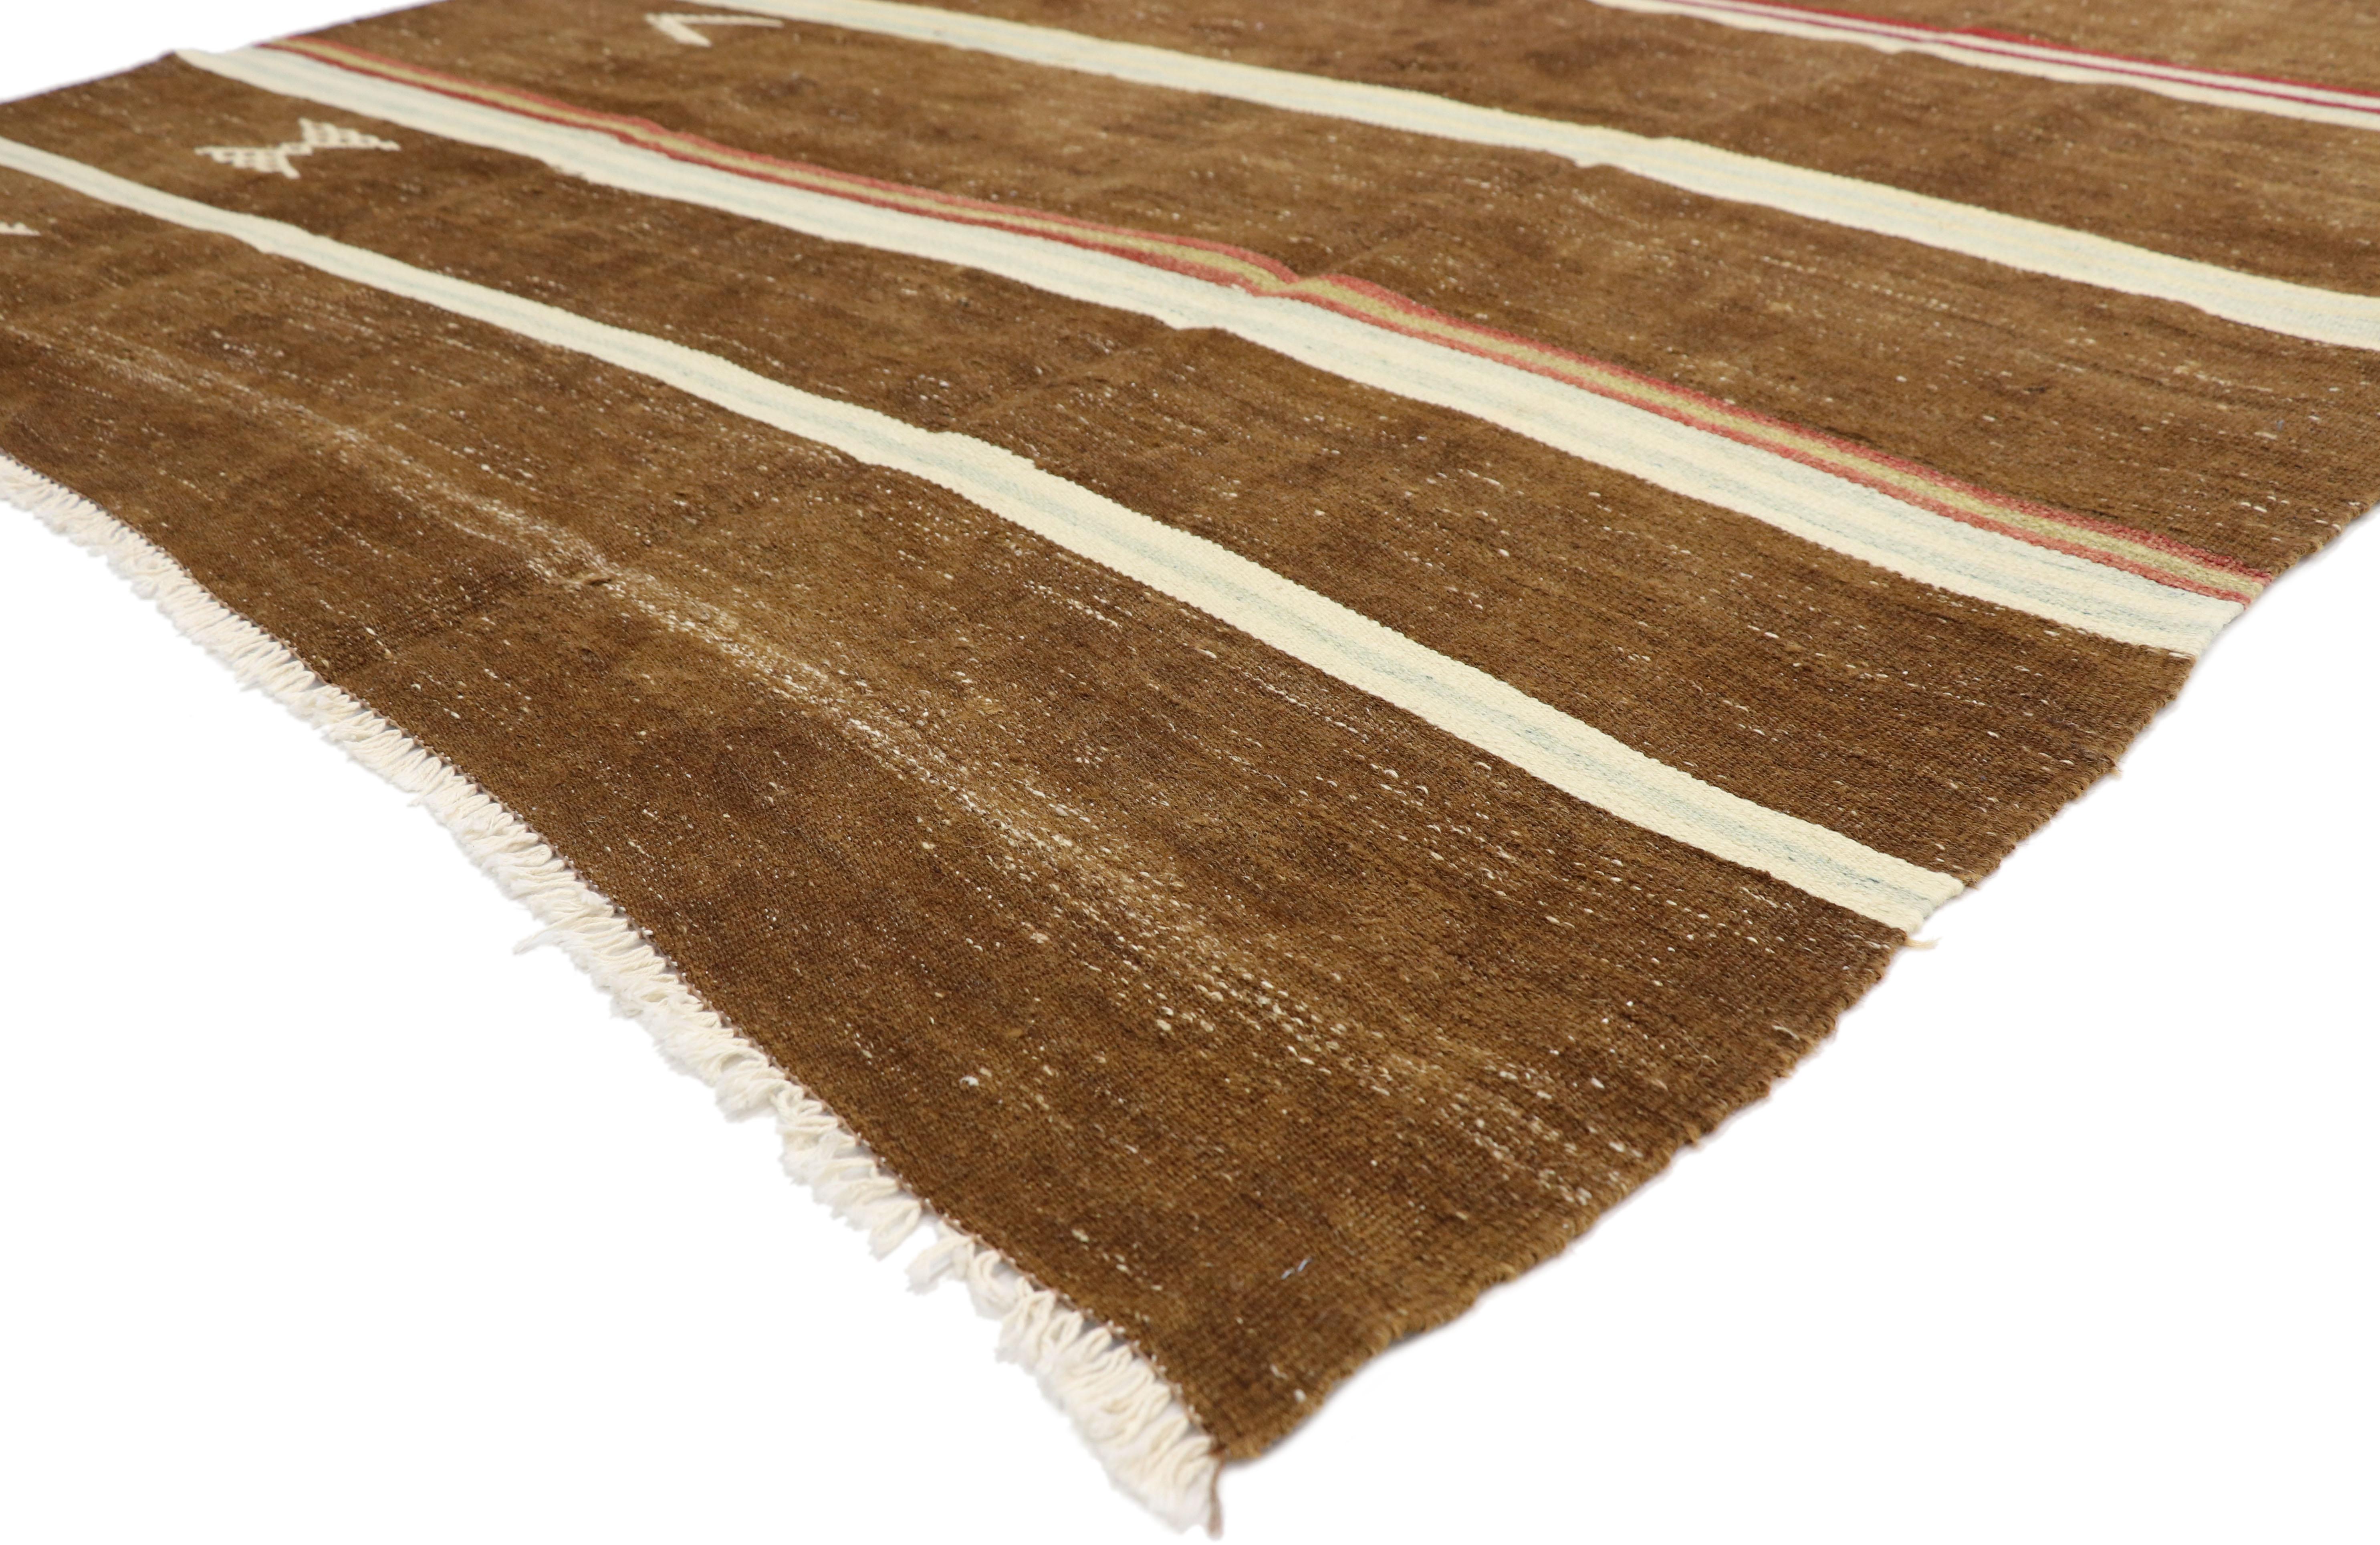 51324, gestreifter türkischer Kelim-Teppich im böhmischen Tribal-Stil, flachgewebter Teppich. Dieser handgewebte, gestreifte türkische Flachgewebe-Kilim aus Wolle weist horizontale Bänder auf, die mit symbolischen Stammesmotiven übersät sind. Dieser